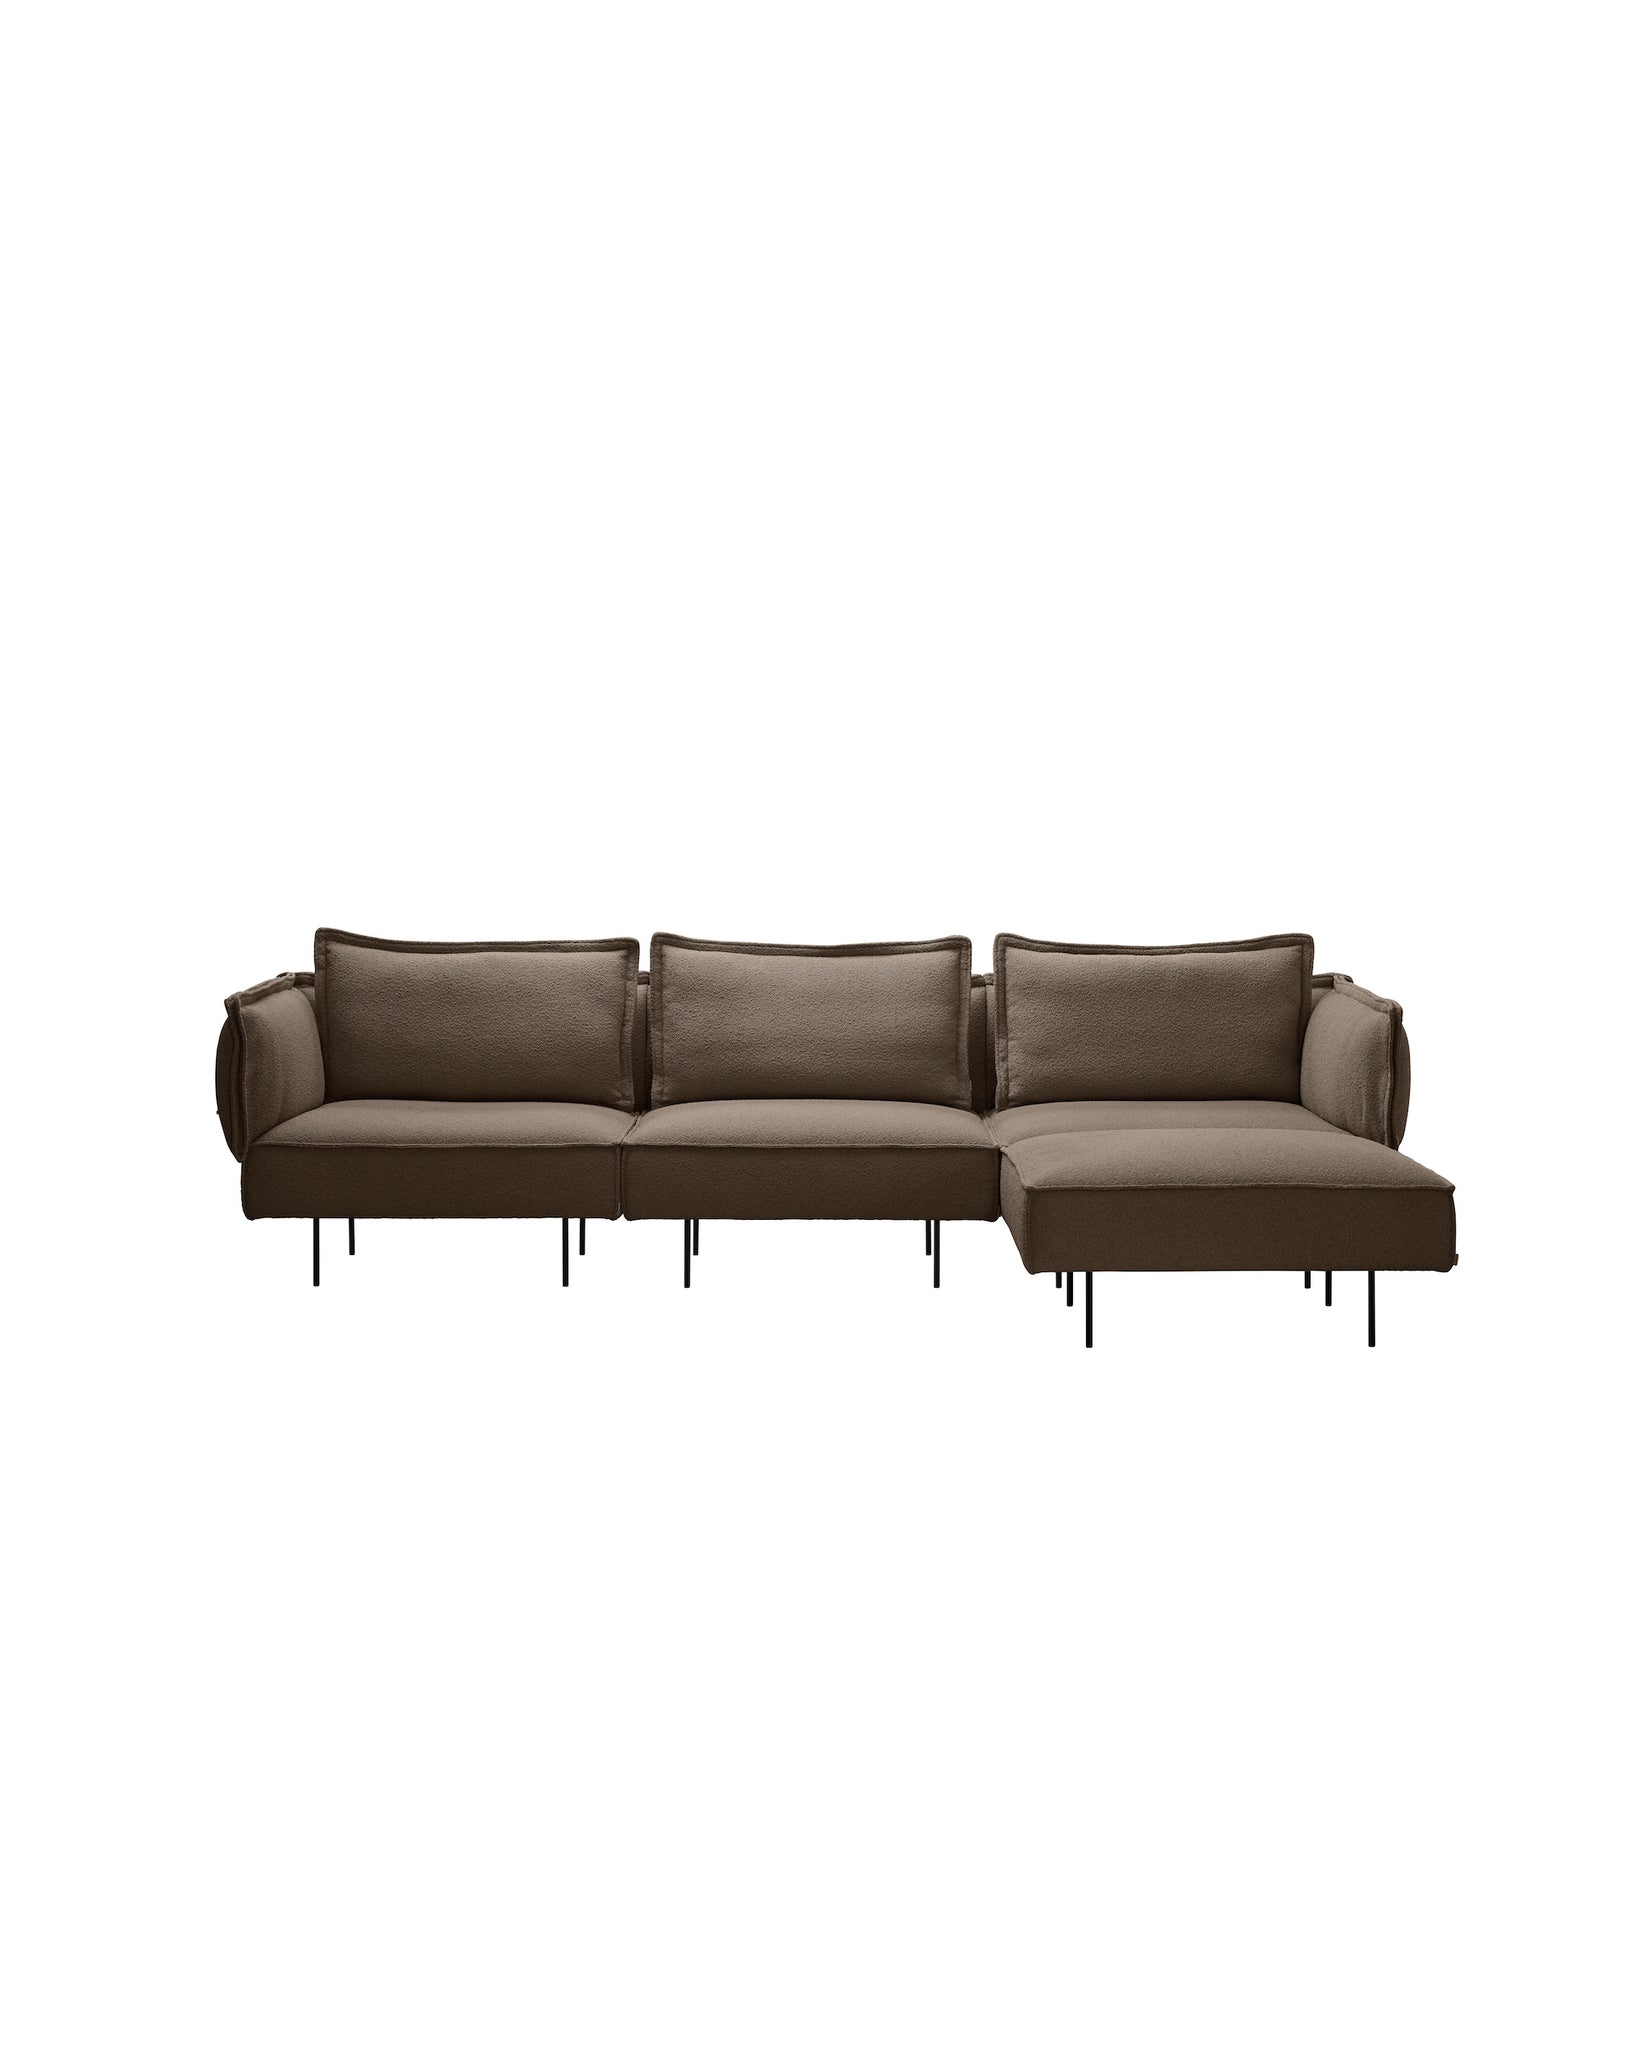 The Modular Sofa 300 w/ Chaise